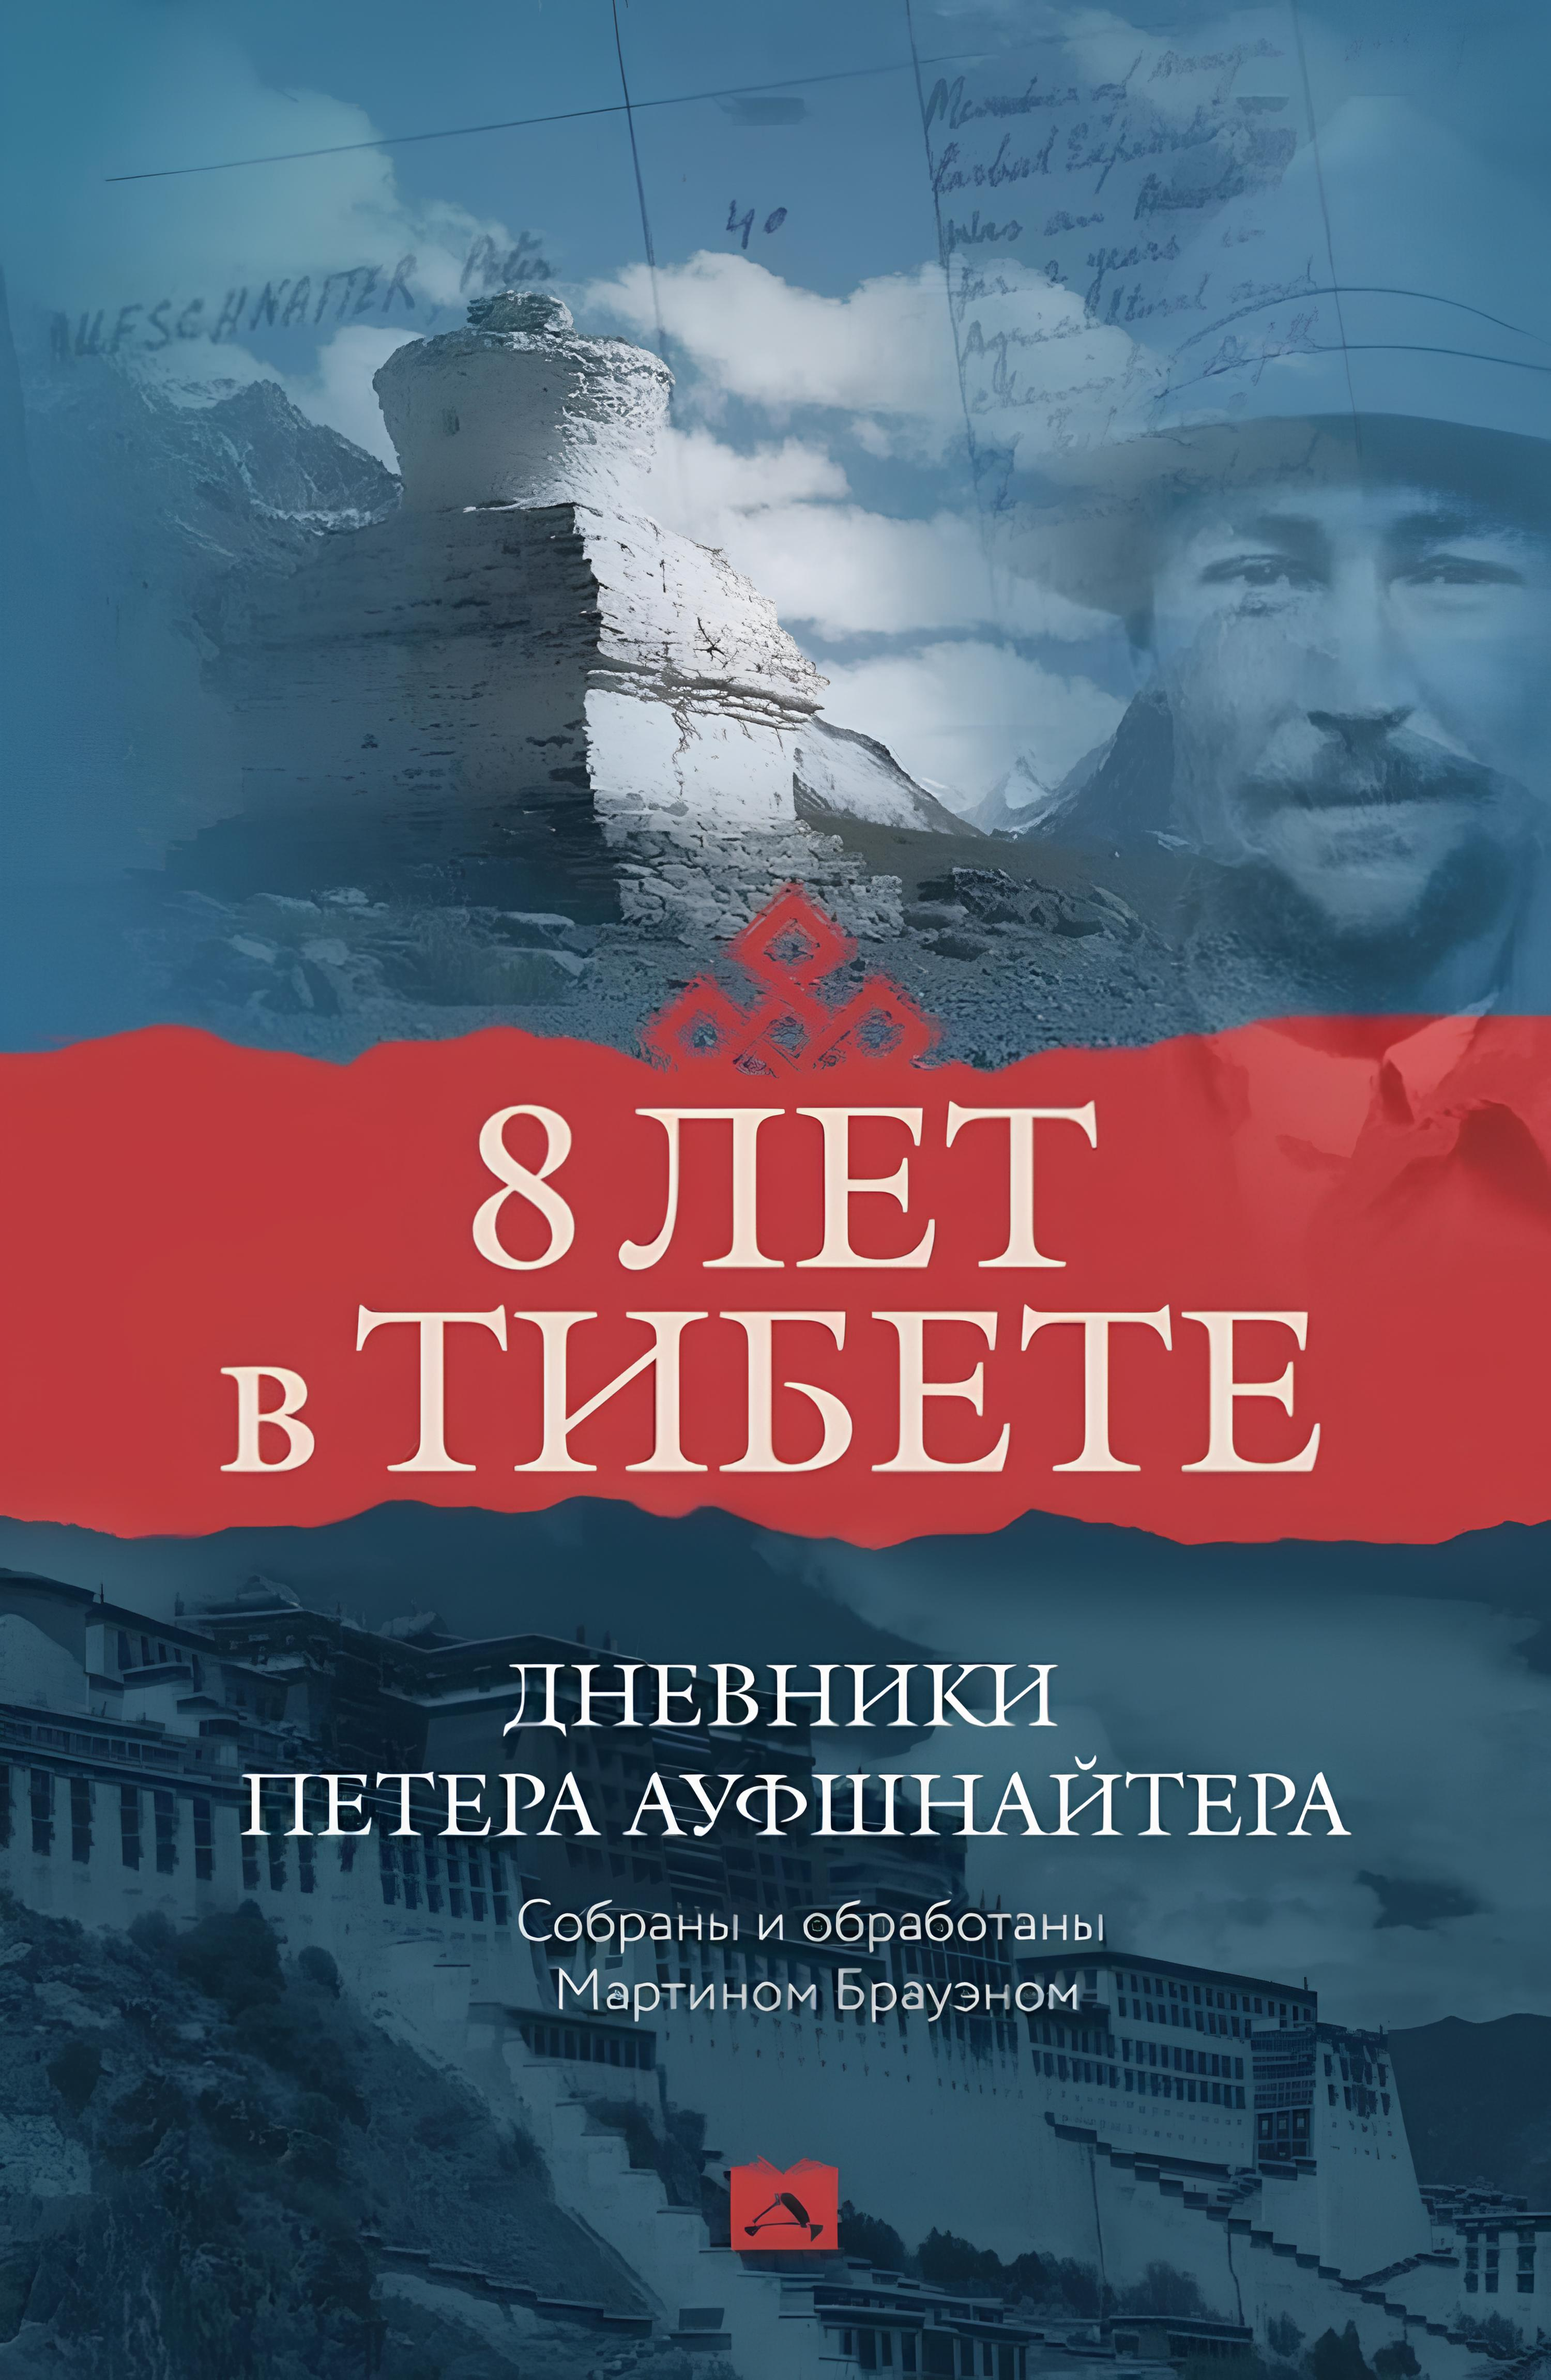 "Восемь лет в Тибете. Дневники Петера Ауфшнайтера" 